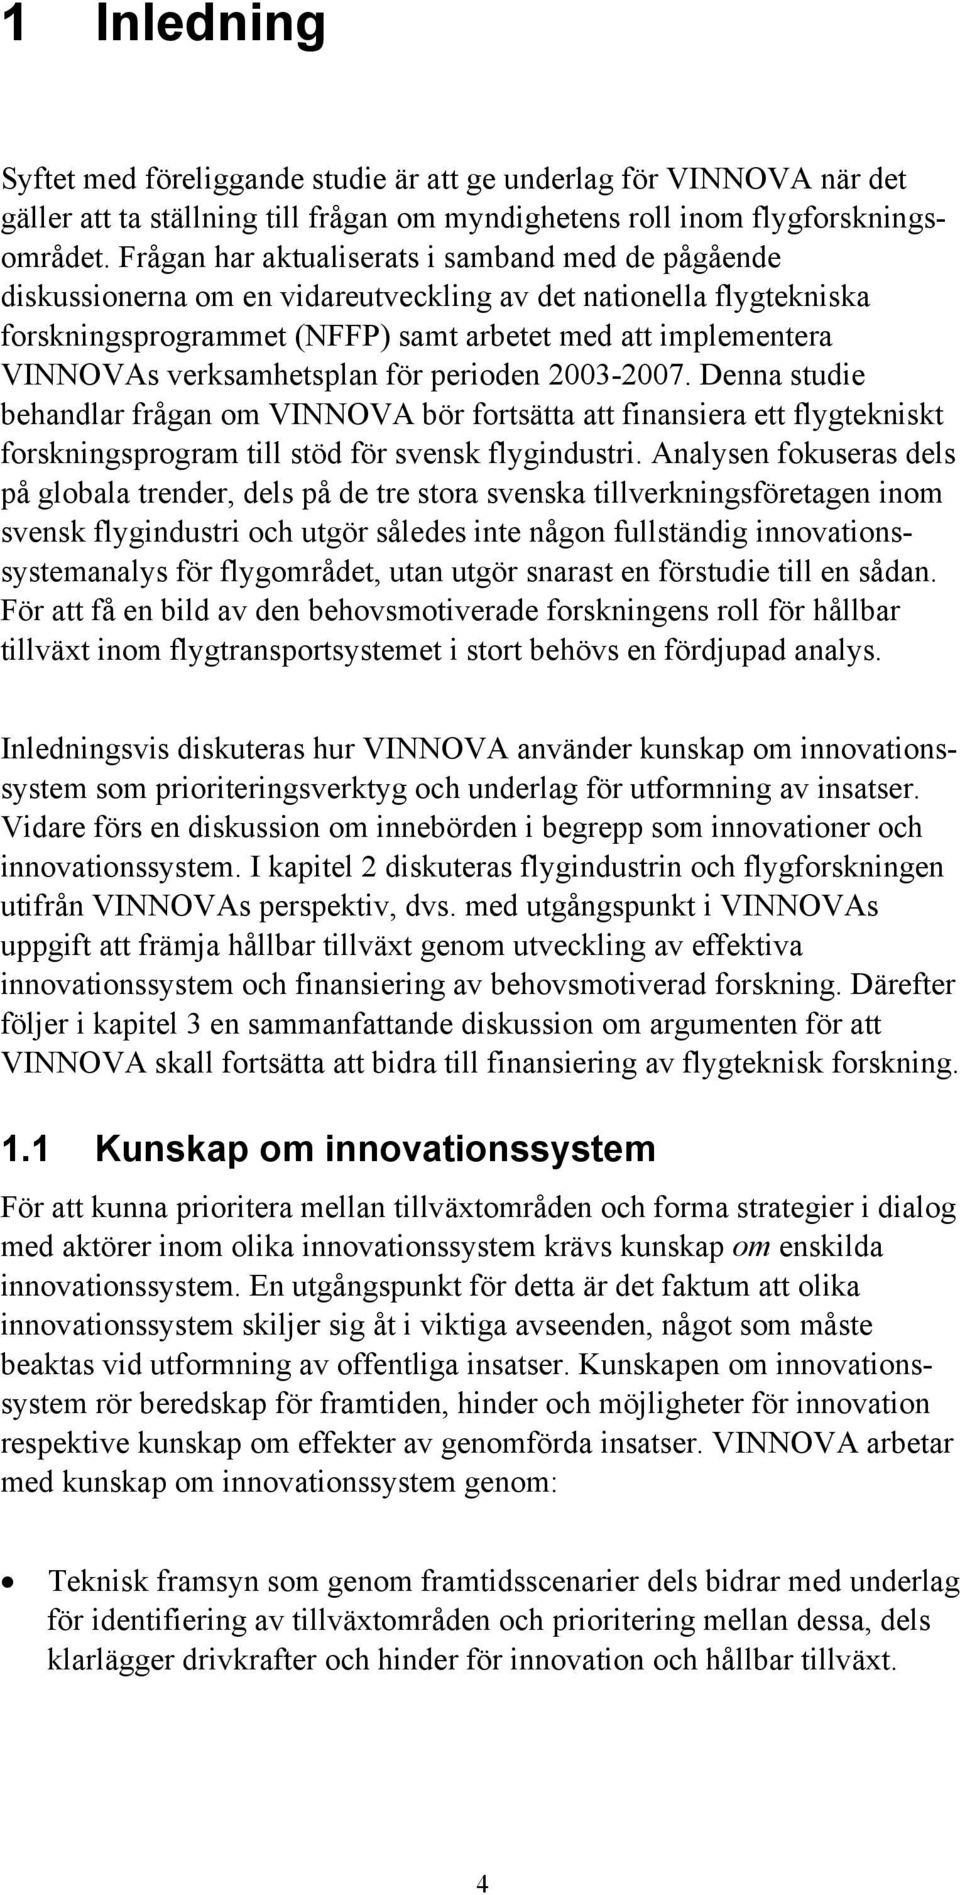 verksamhetsplan för perioden 2003-2007. Denna studie behandlar frågan om VINNOVA bör fortsätta att finansiera ett flygtekniskt forskningsprogram till stöd för svensk flygindustri.